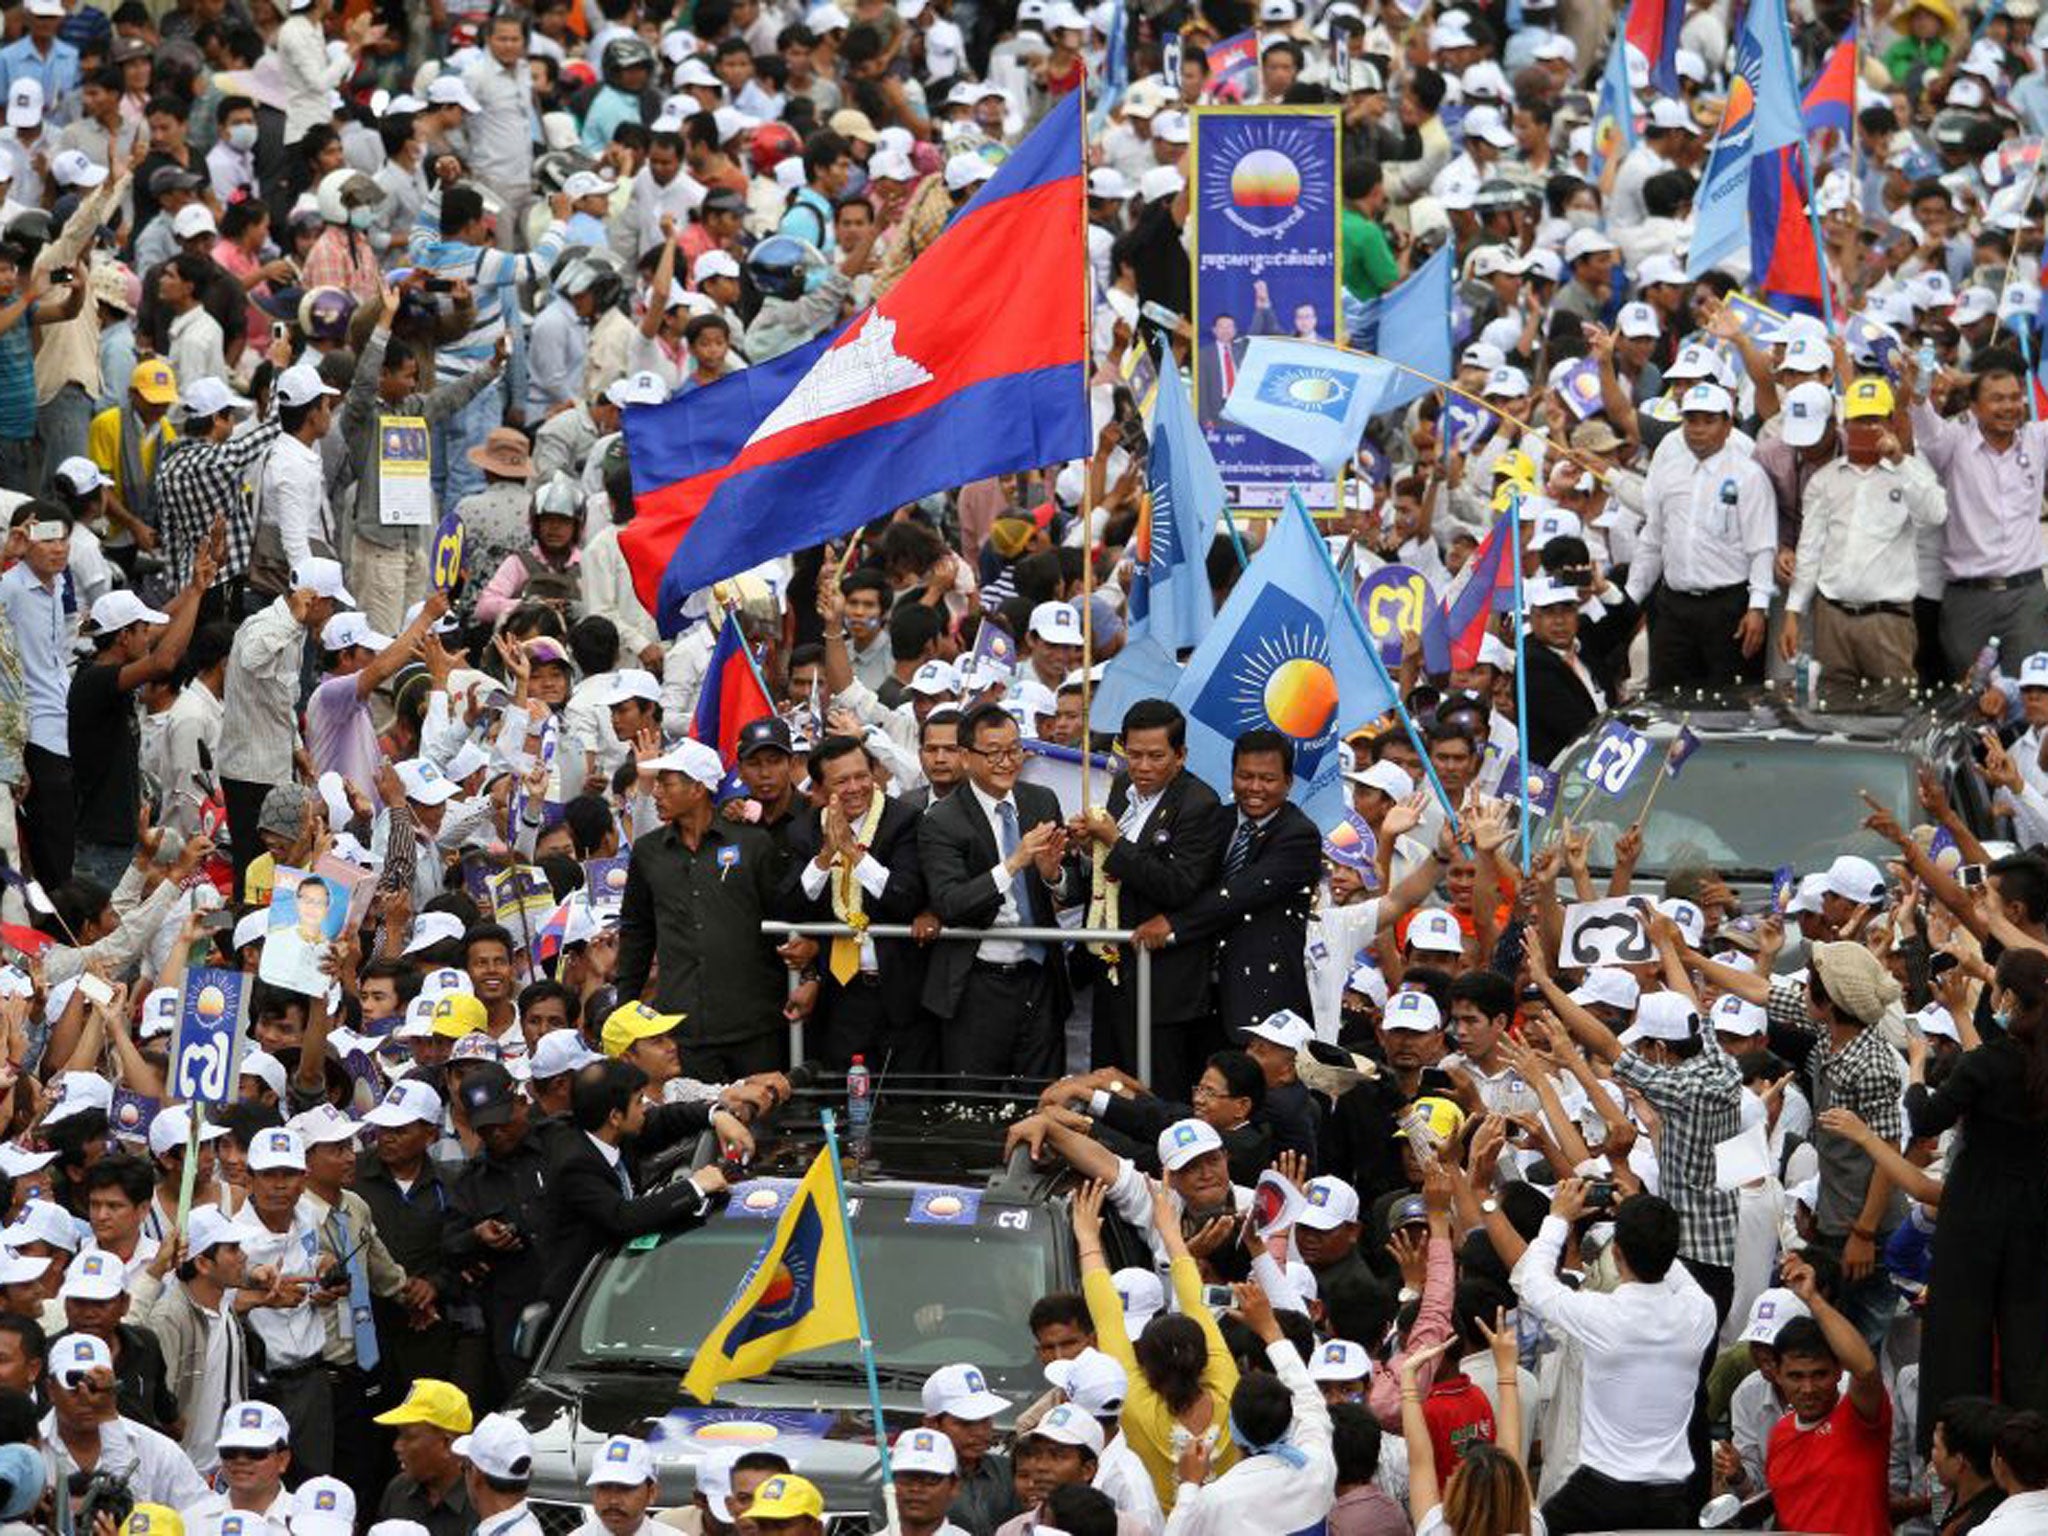 Opposition leader Sam Rainsy, centre, in Phnom Penh